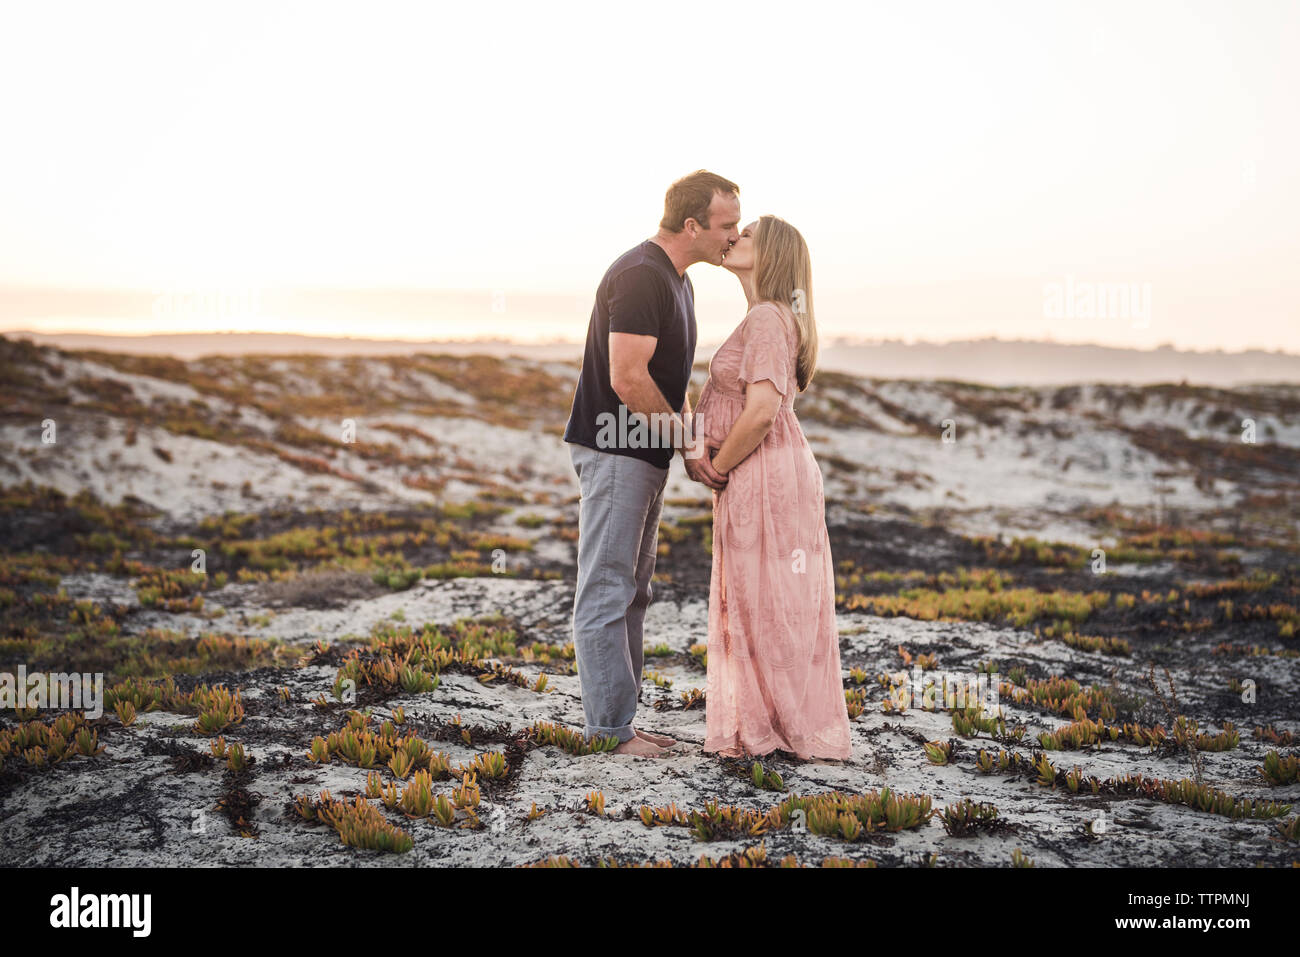 Vista laterale della coppia romantica baciare mentre permanente sulla spiaggia contro il cielo chiaro durante il tramonto Foto Stock